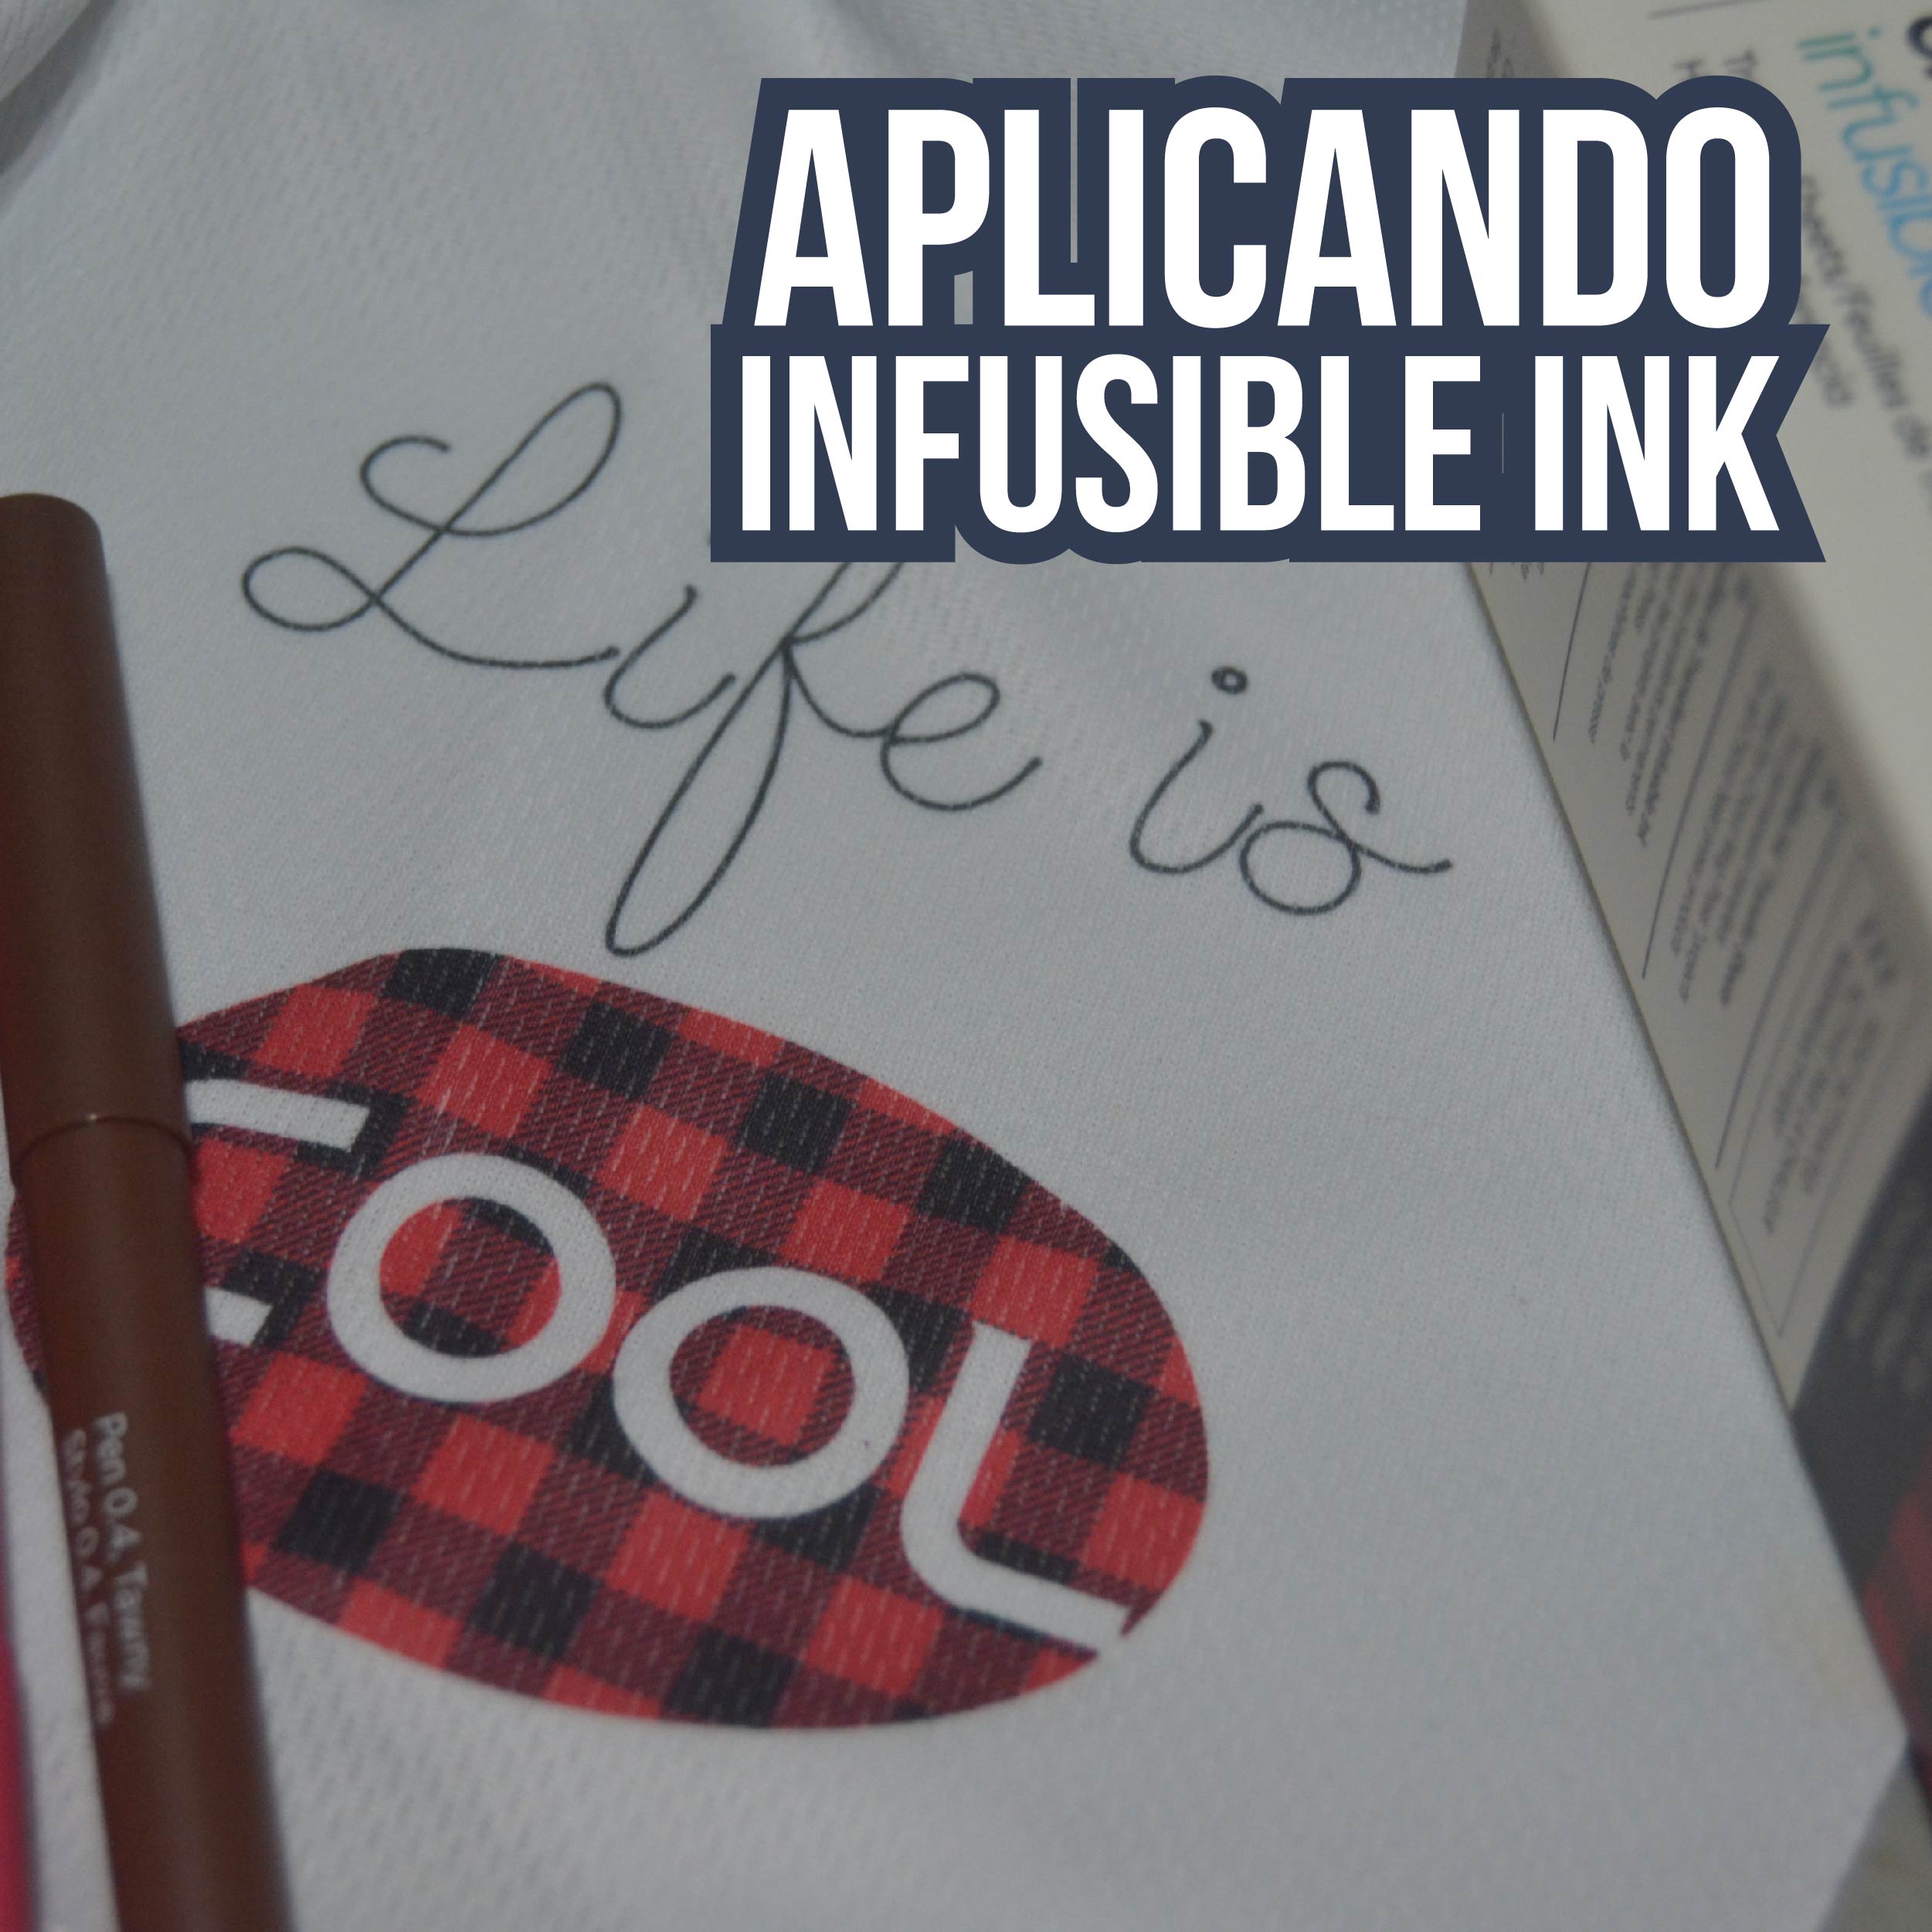 ¿Qué es el infusible ink? ¿Para qué sirve?